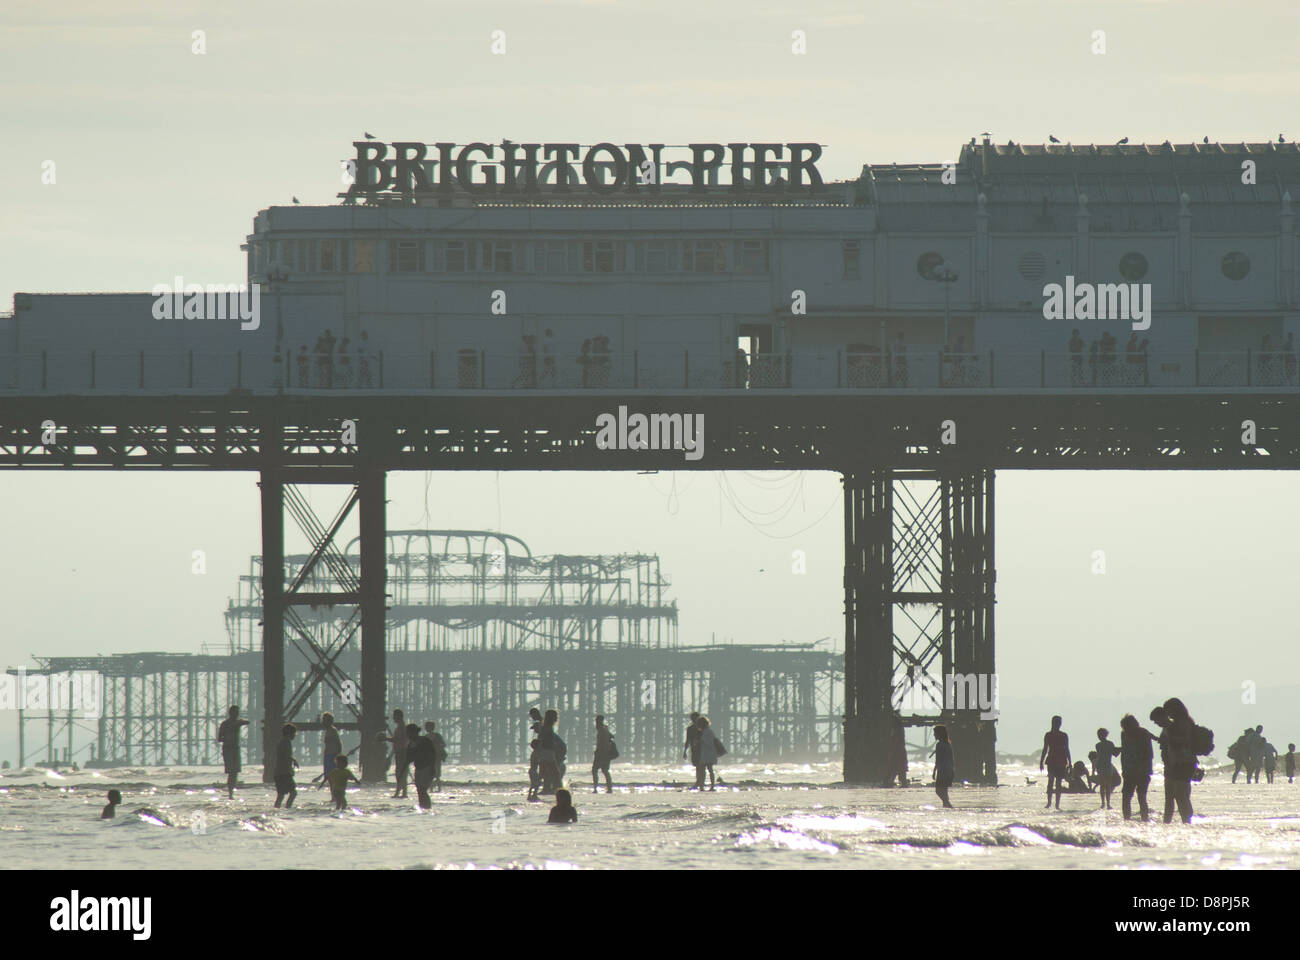 Un tardo pomeriggio vista estiva di persone della bassa marea presso la spiaggia di Brighton. Foto Stock